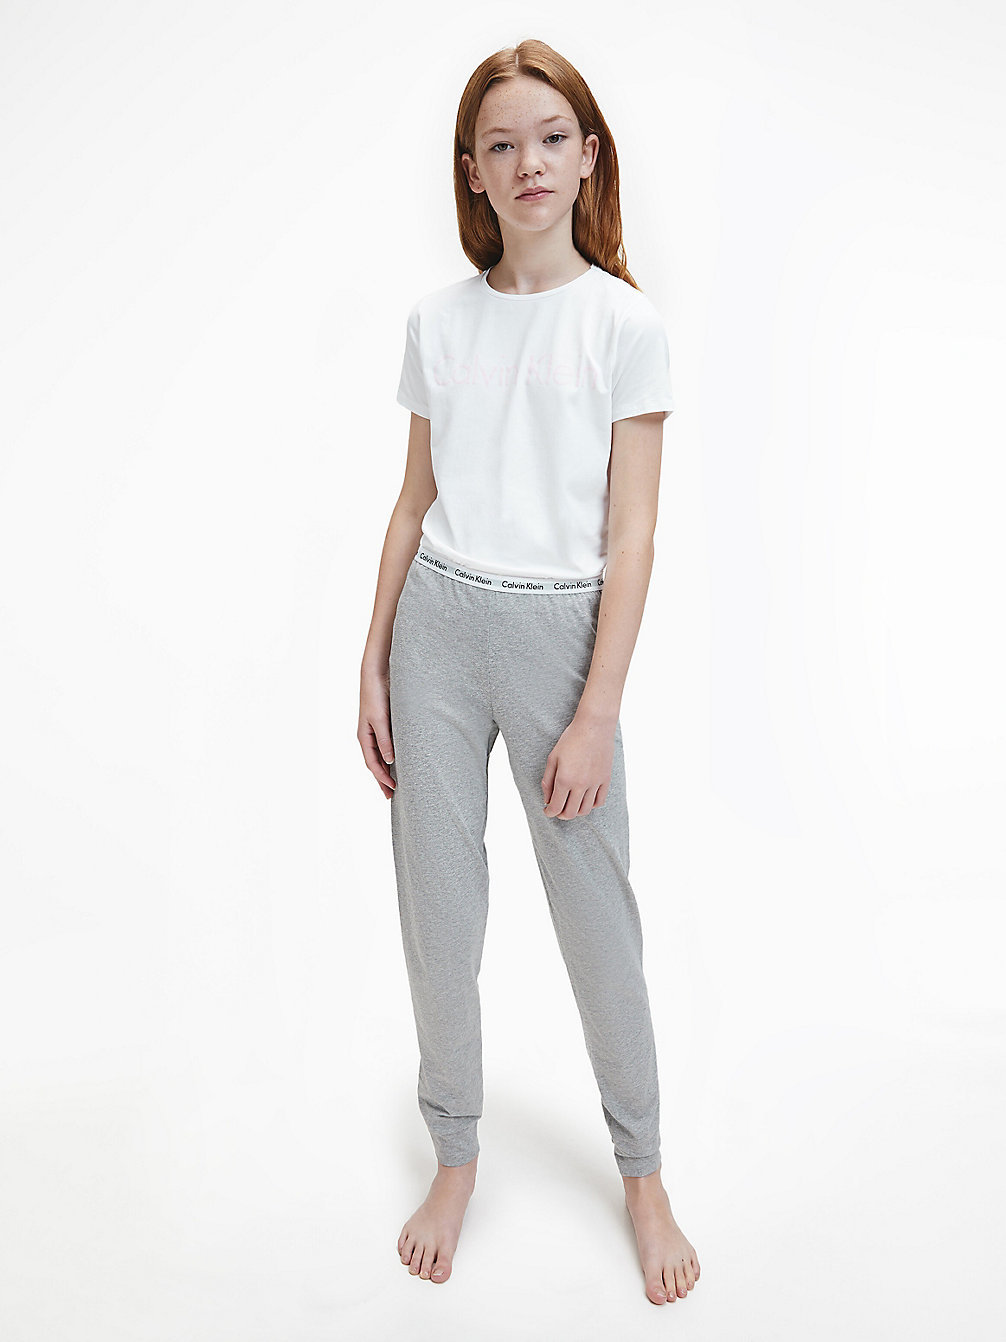 WHITE/GREY HTR > Пижама для девочек - Modern Cotton > undefined girls - Calvin Klein